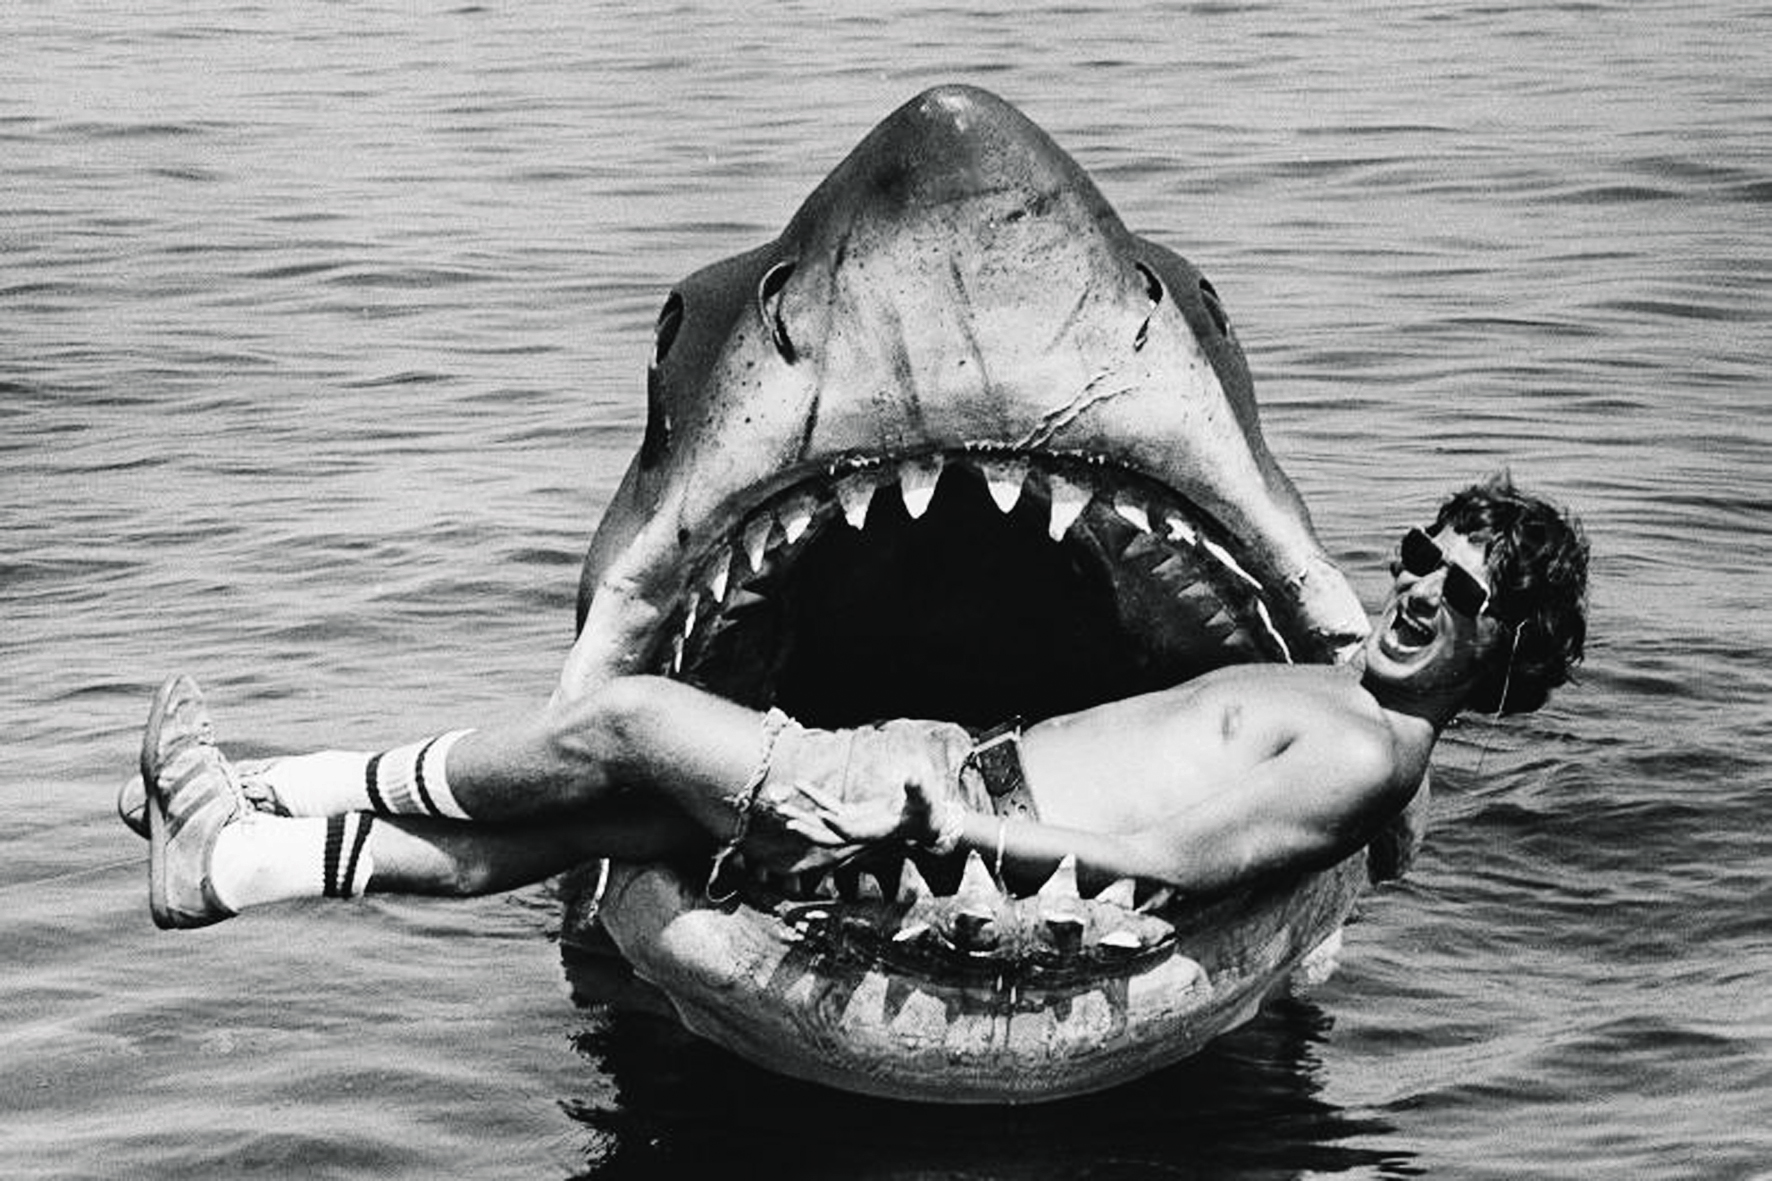 Um Spielberg mais novo – e mais estúpido